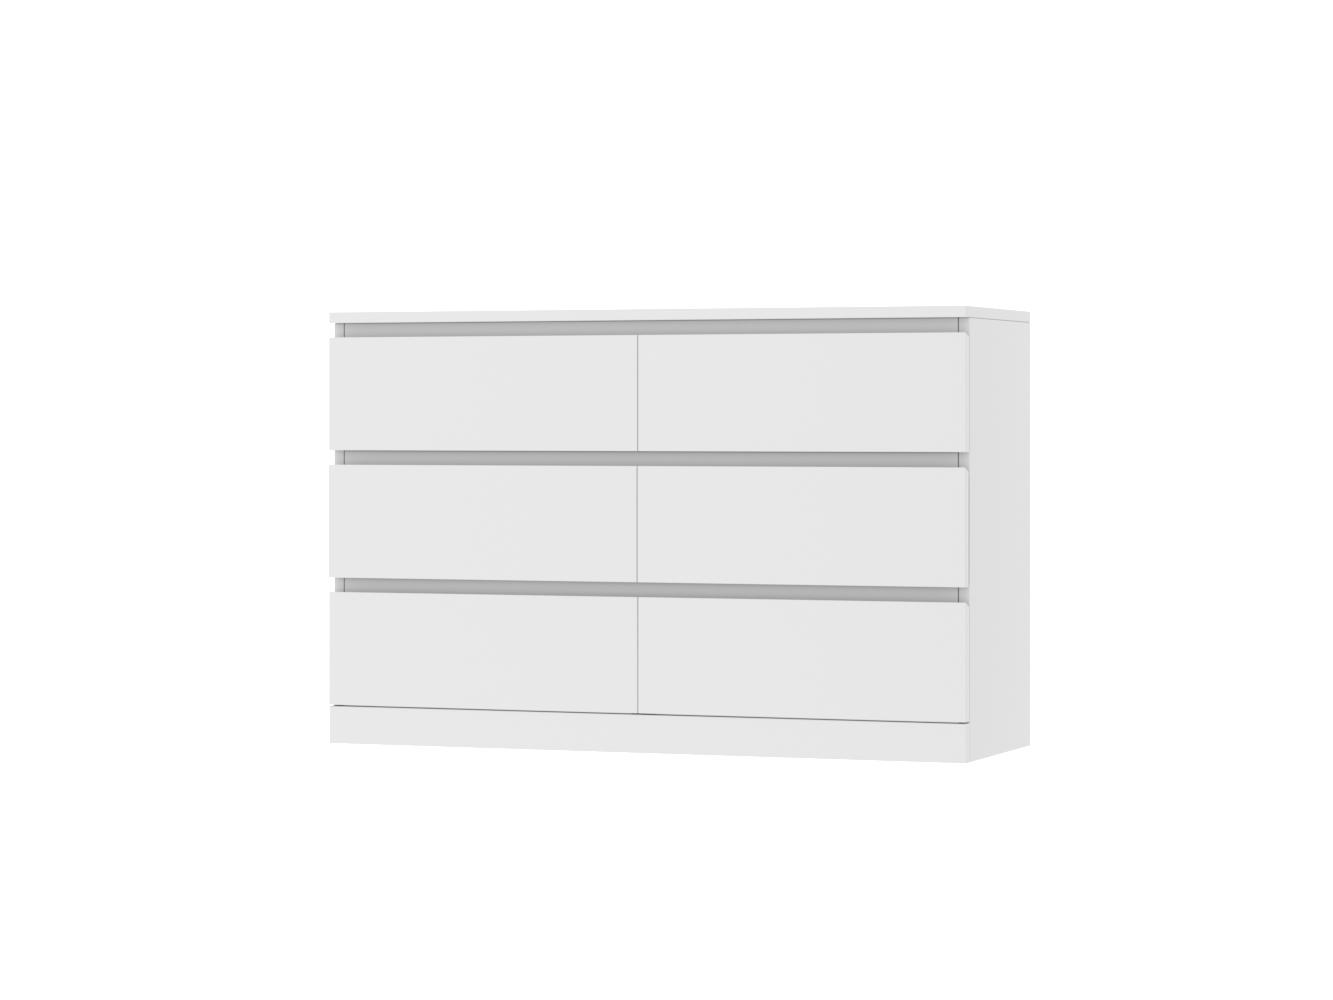  Комод Мальм 15 white ИКЕА (IKEA) изображение товара